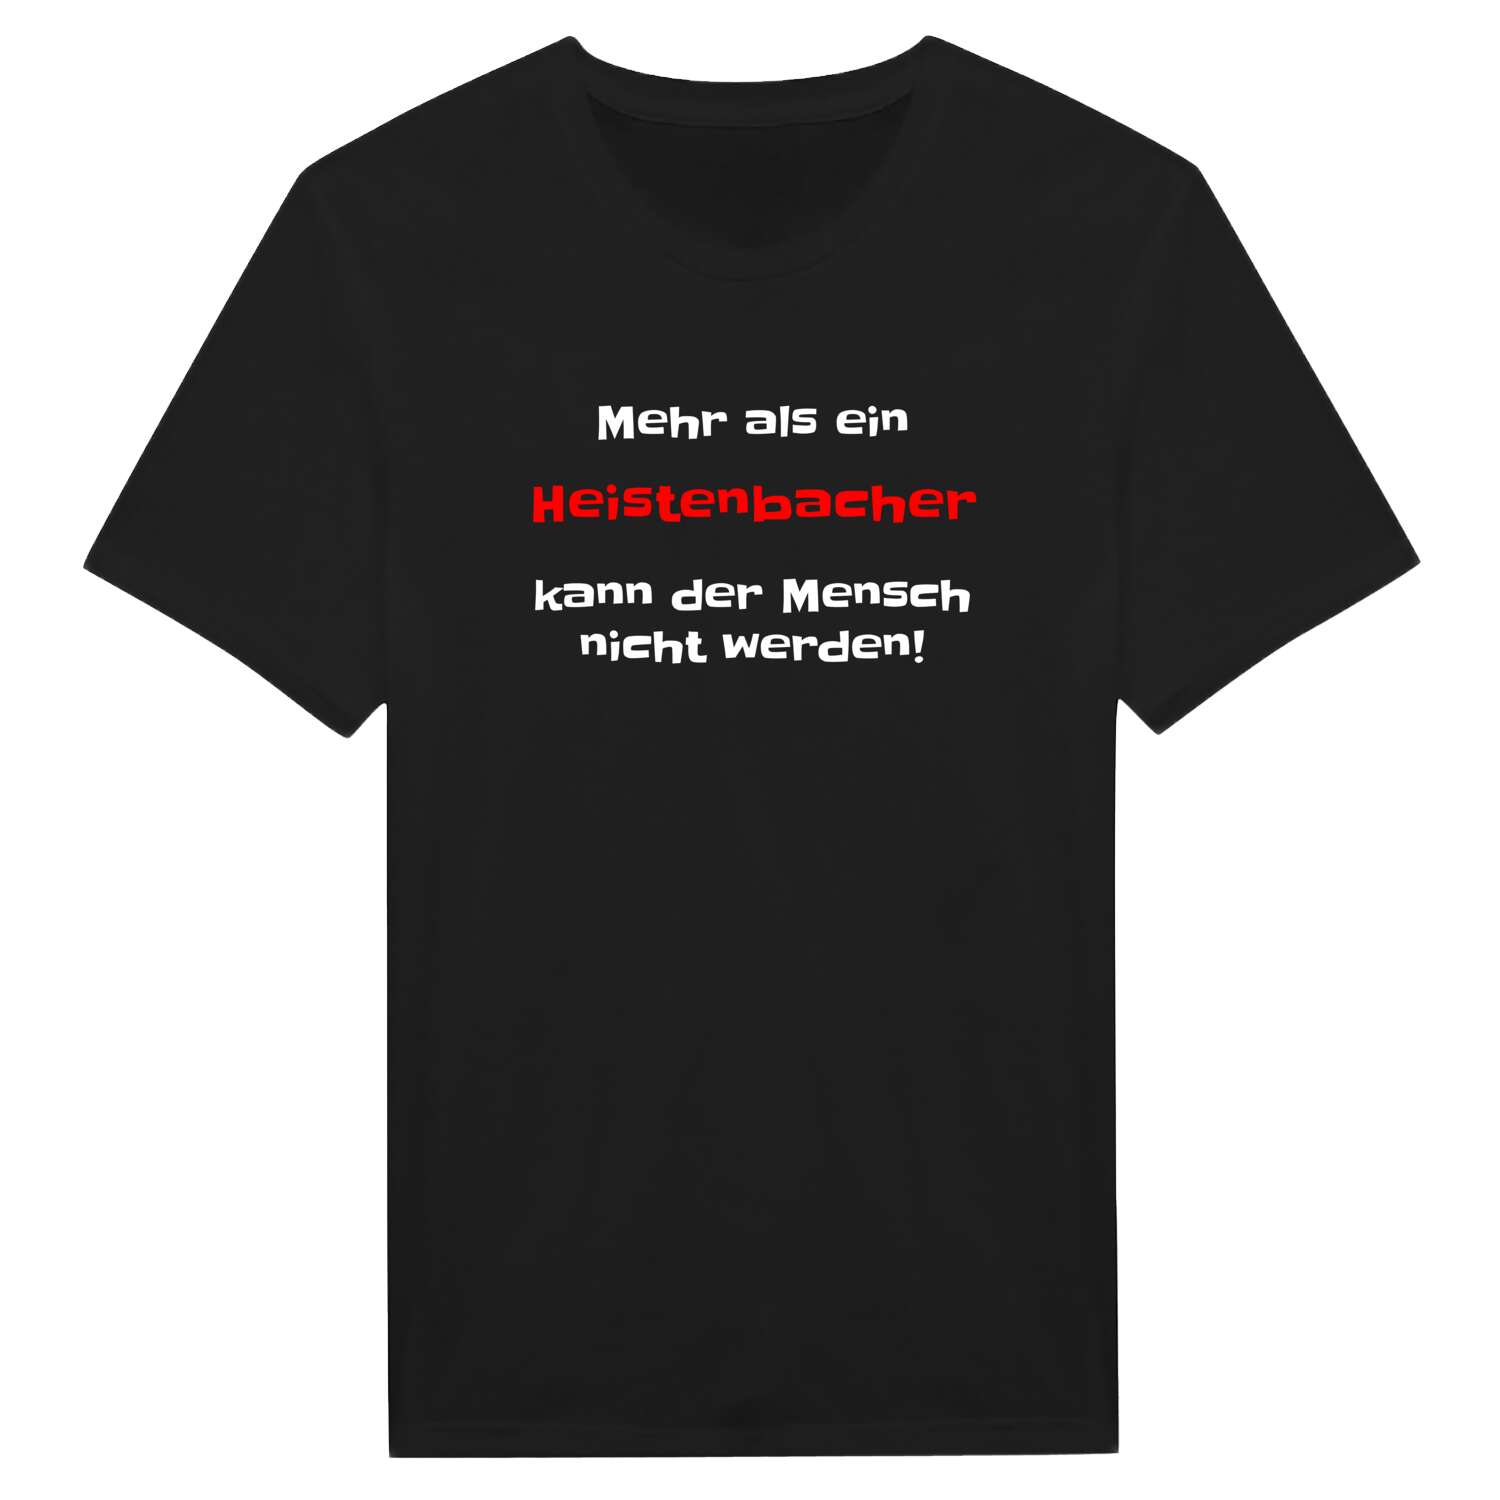 Heistenbach T-Shirt »Mehr als ein«